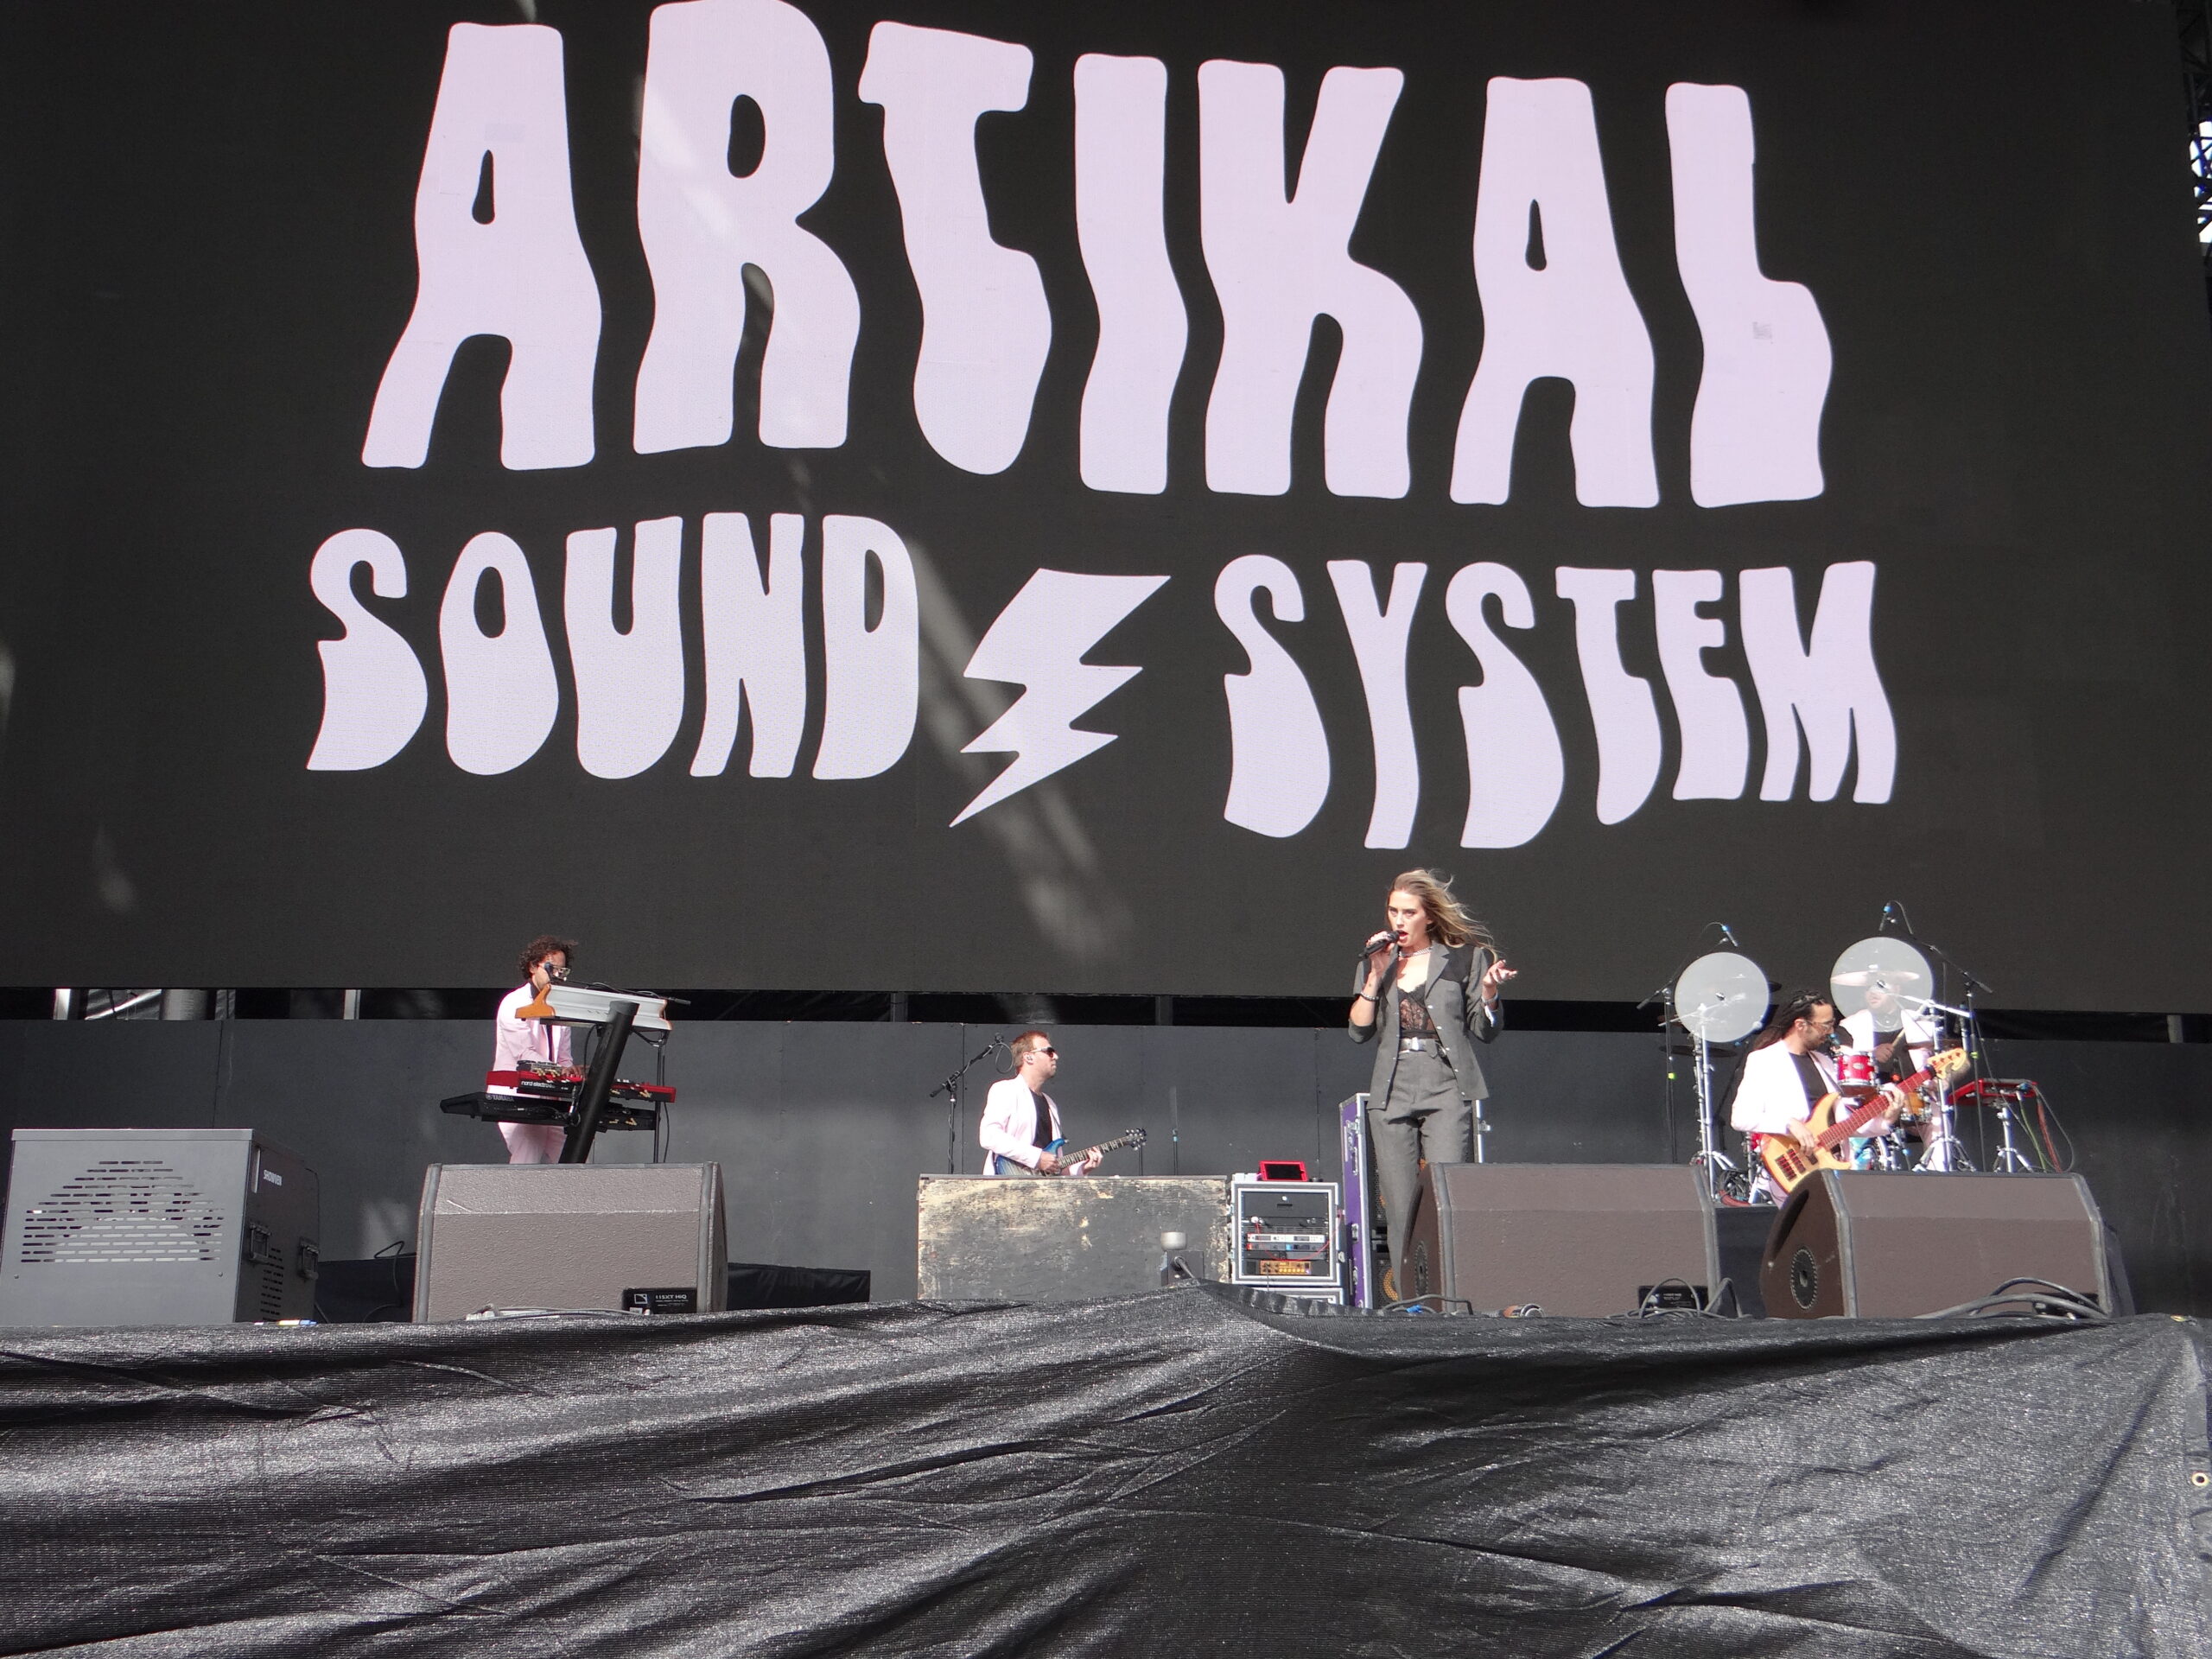 Artikal Sound System